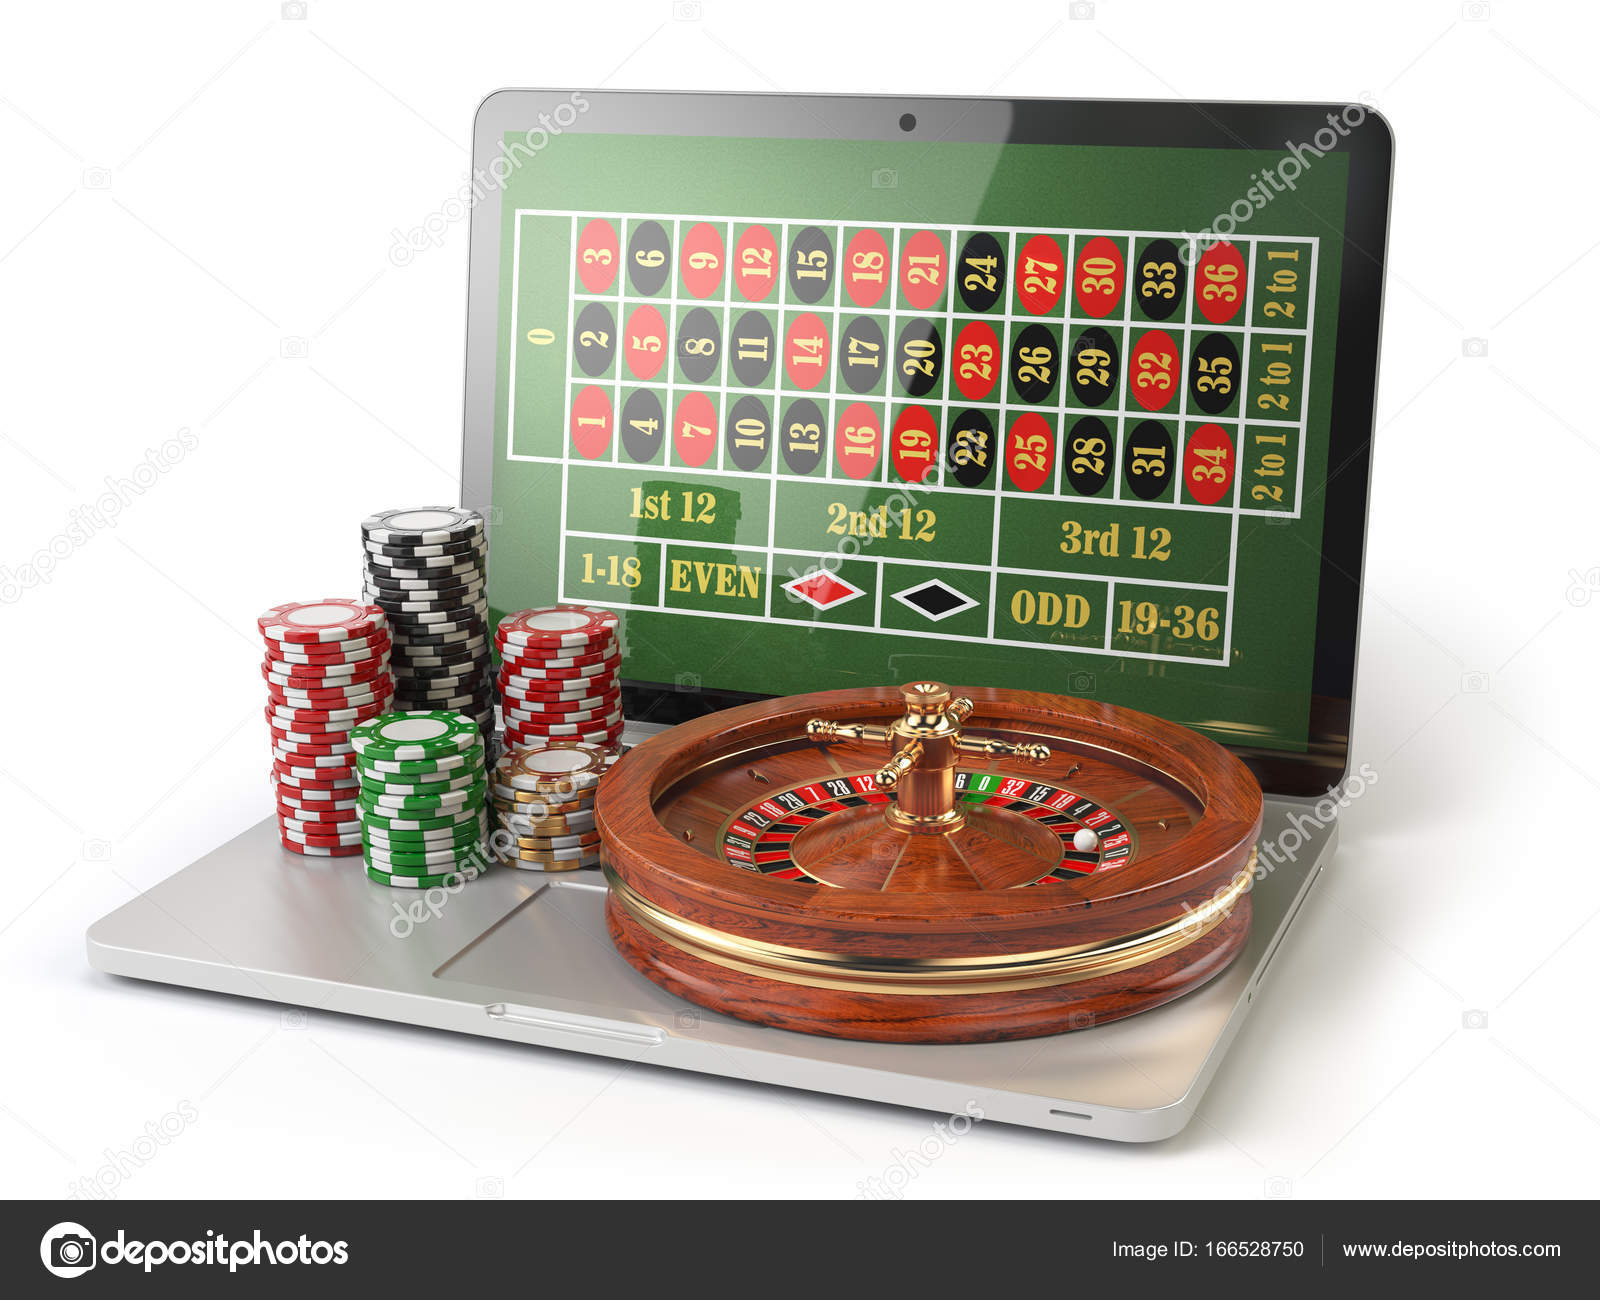 Bitcoin casino flash cliente bet365